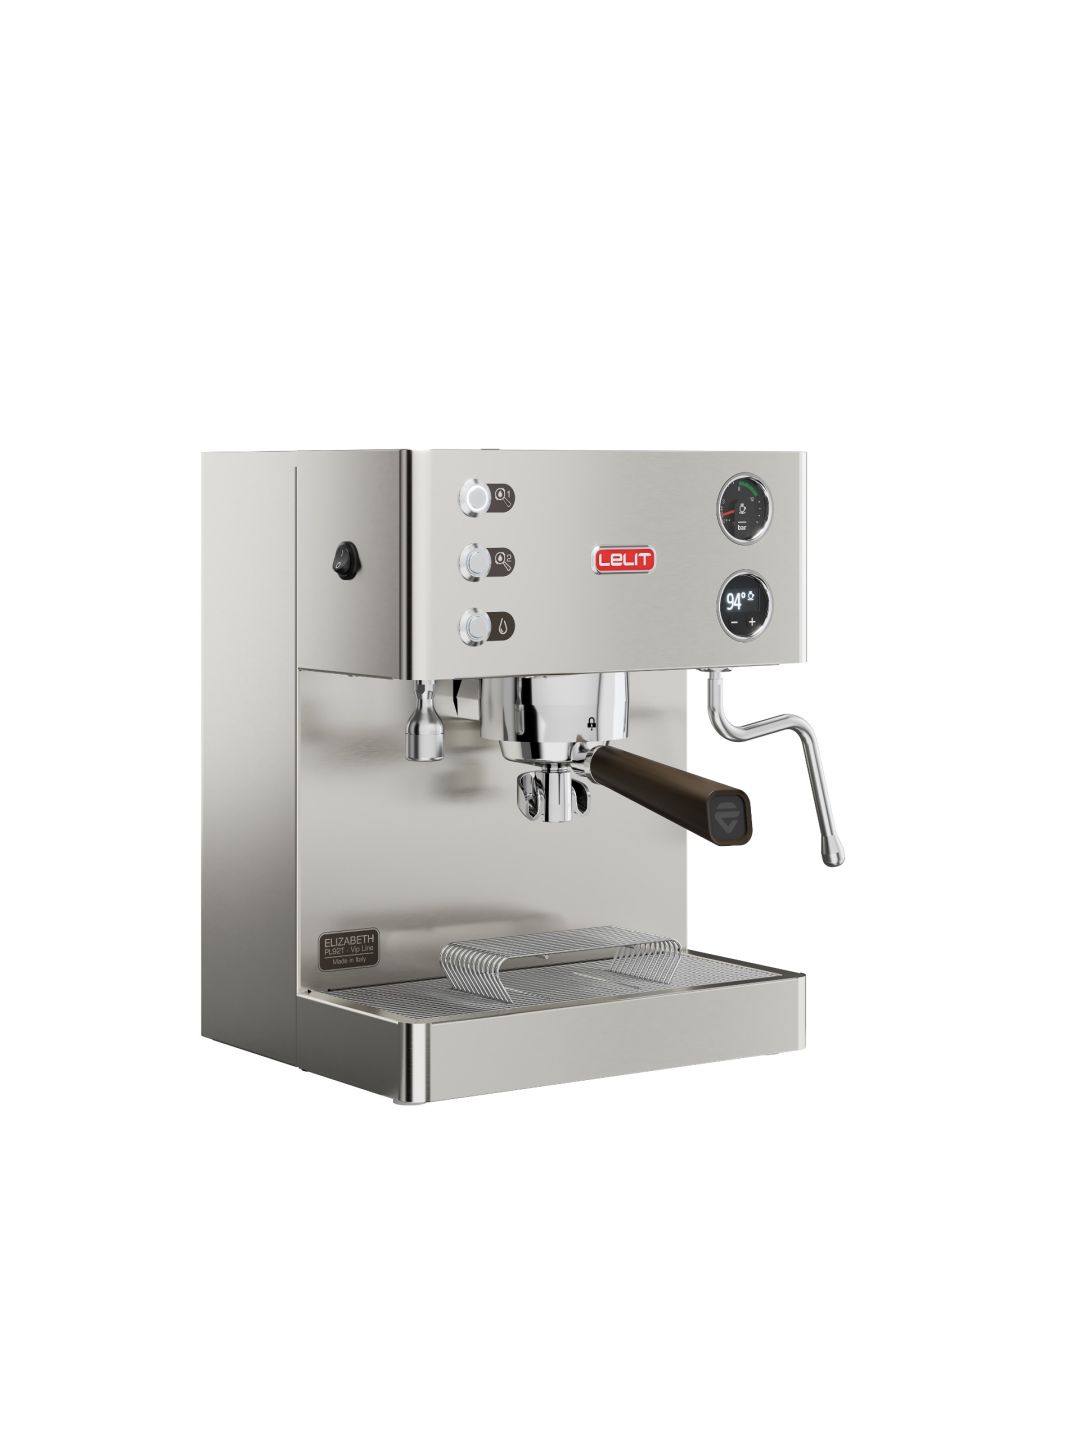 Machine à café manuelle Elizabeth